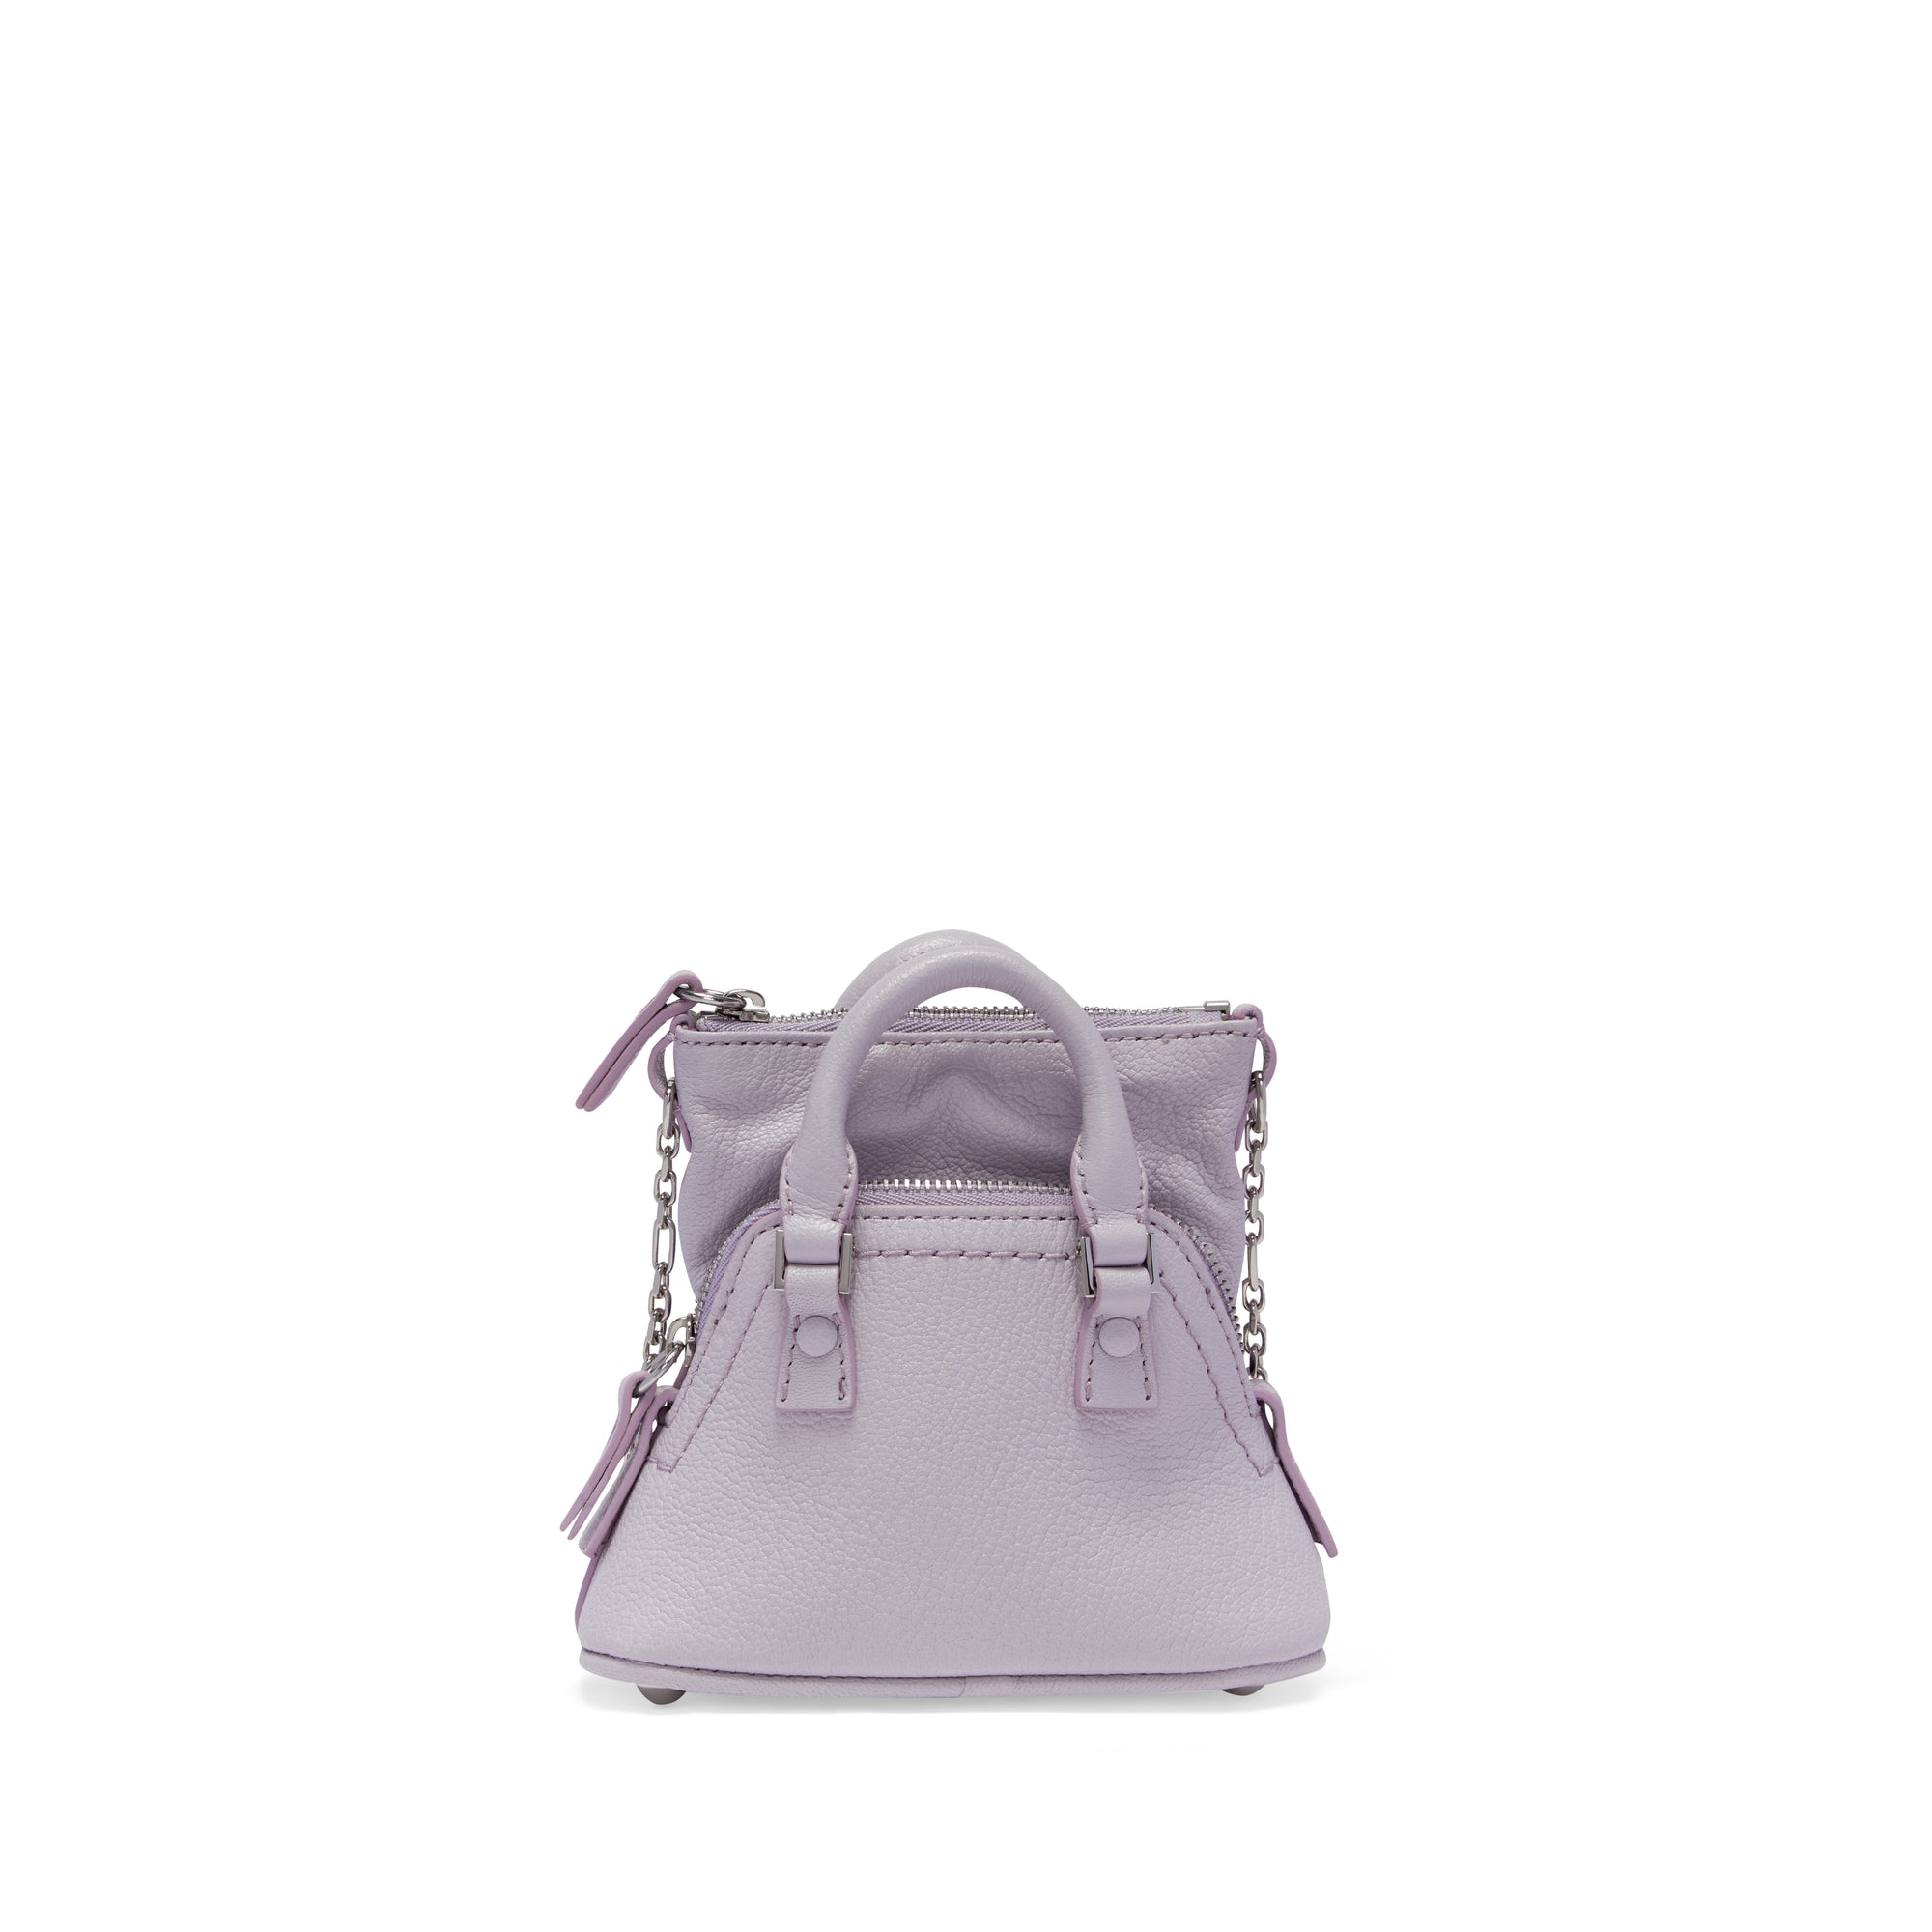 Maison Margiela - Women’s 5AC Classique Baby Bag - (Light Purple) view 3